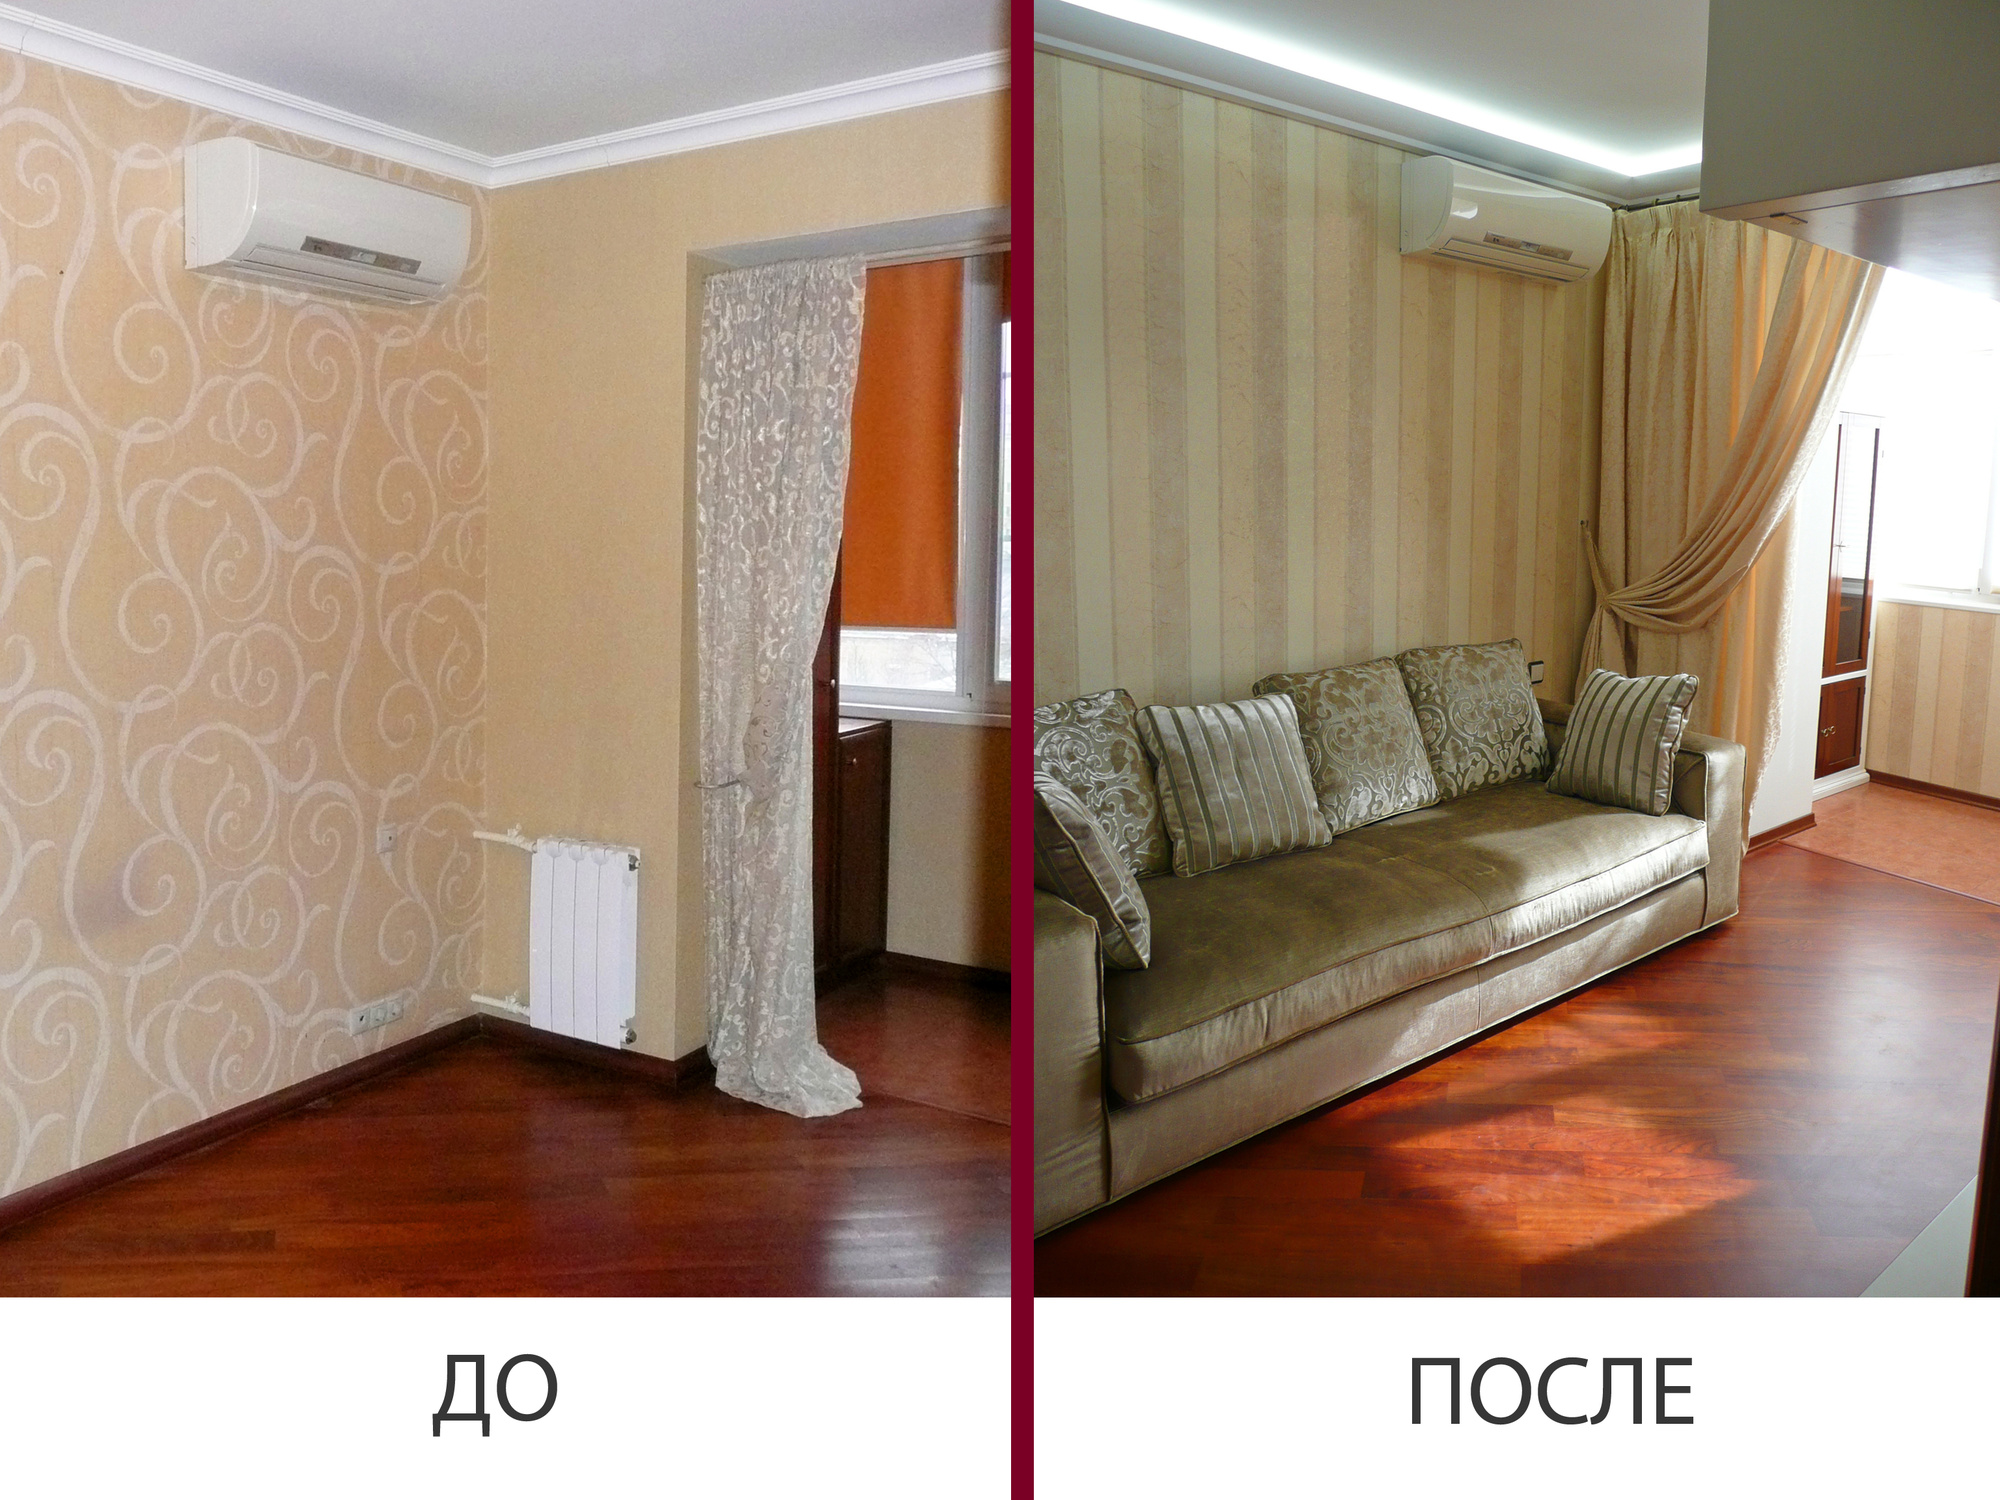 Квартира обои после ремонта. Евроремонт до и после. Отделка до и после. Квартира после ремонта своими руками. Квартира после косметического ремонта.